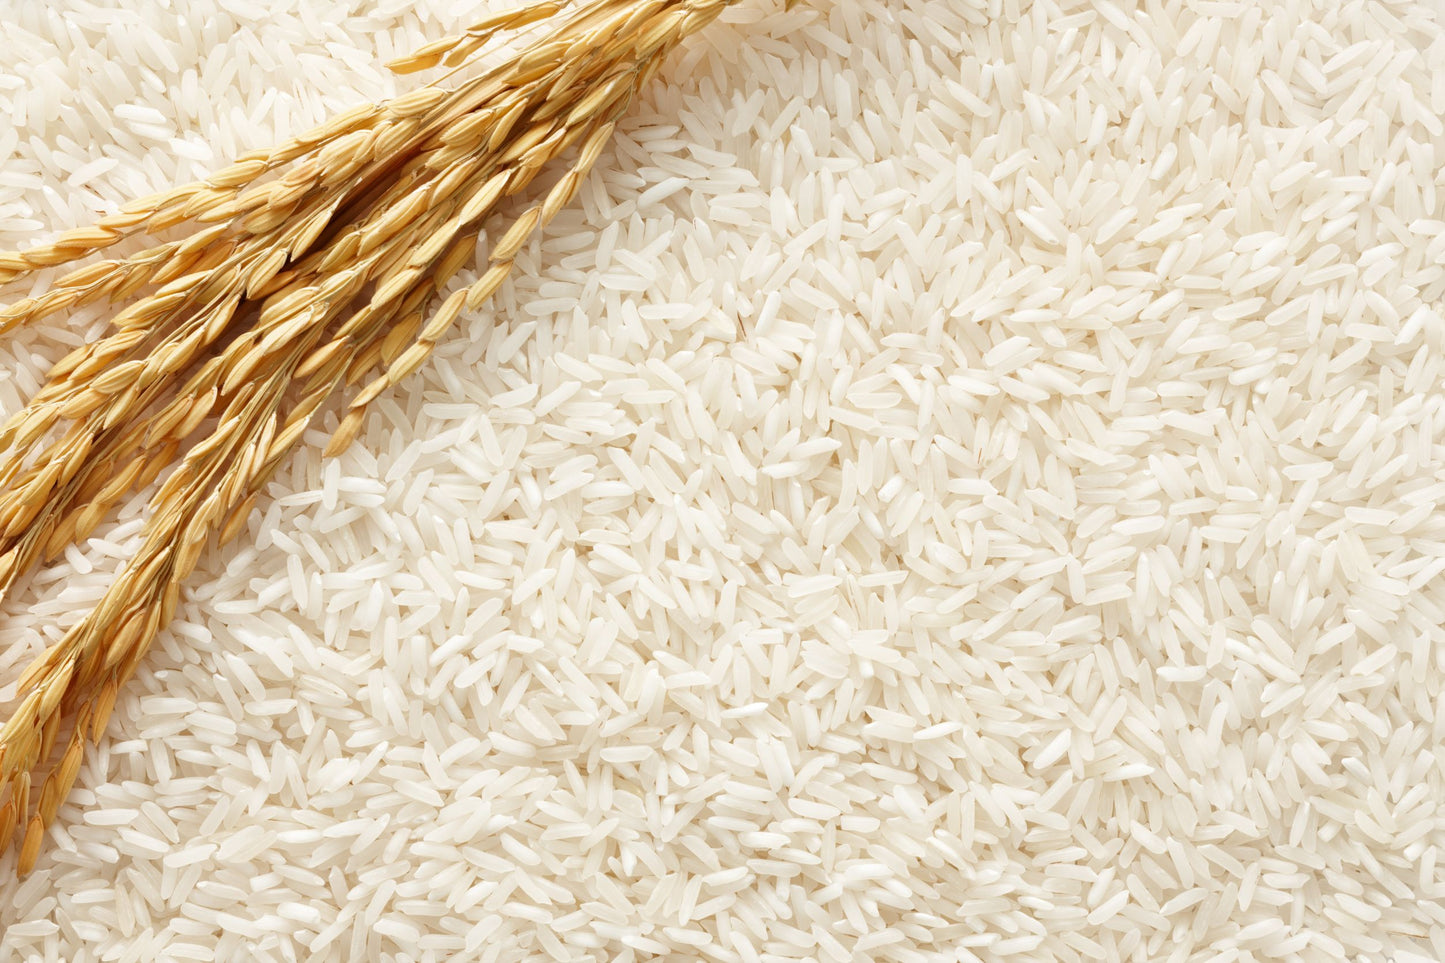 Mascarilla de arroz by ZaJ cosmetics